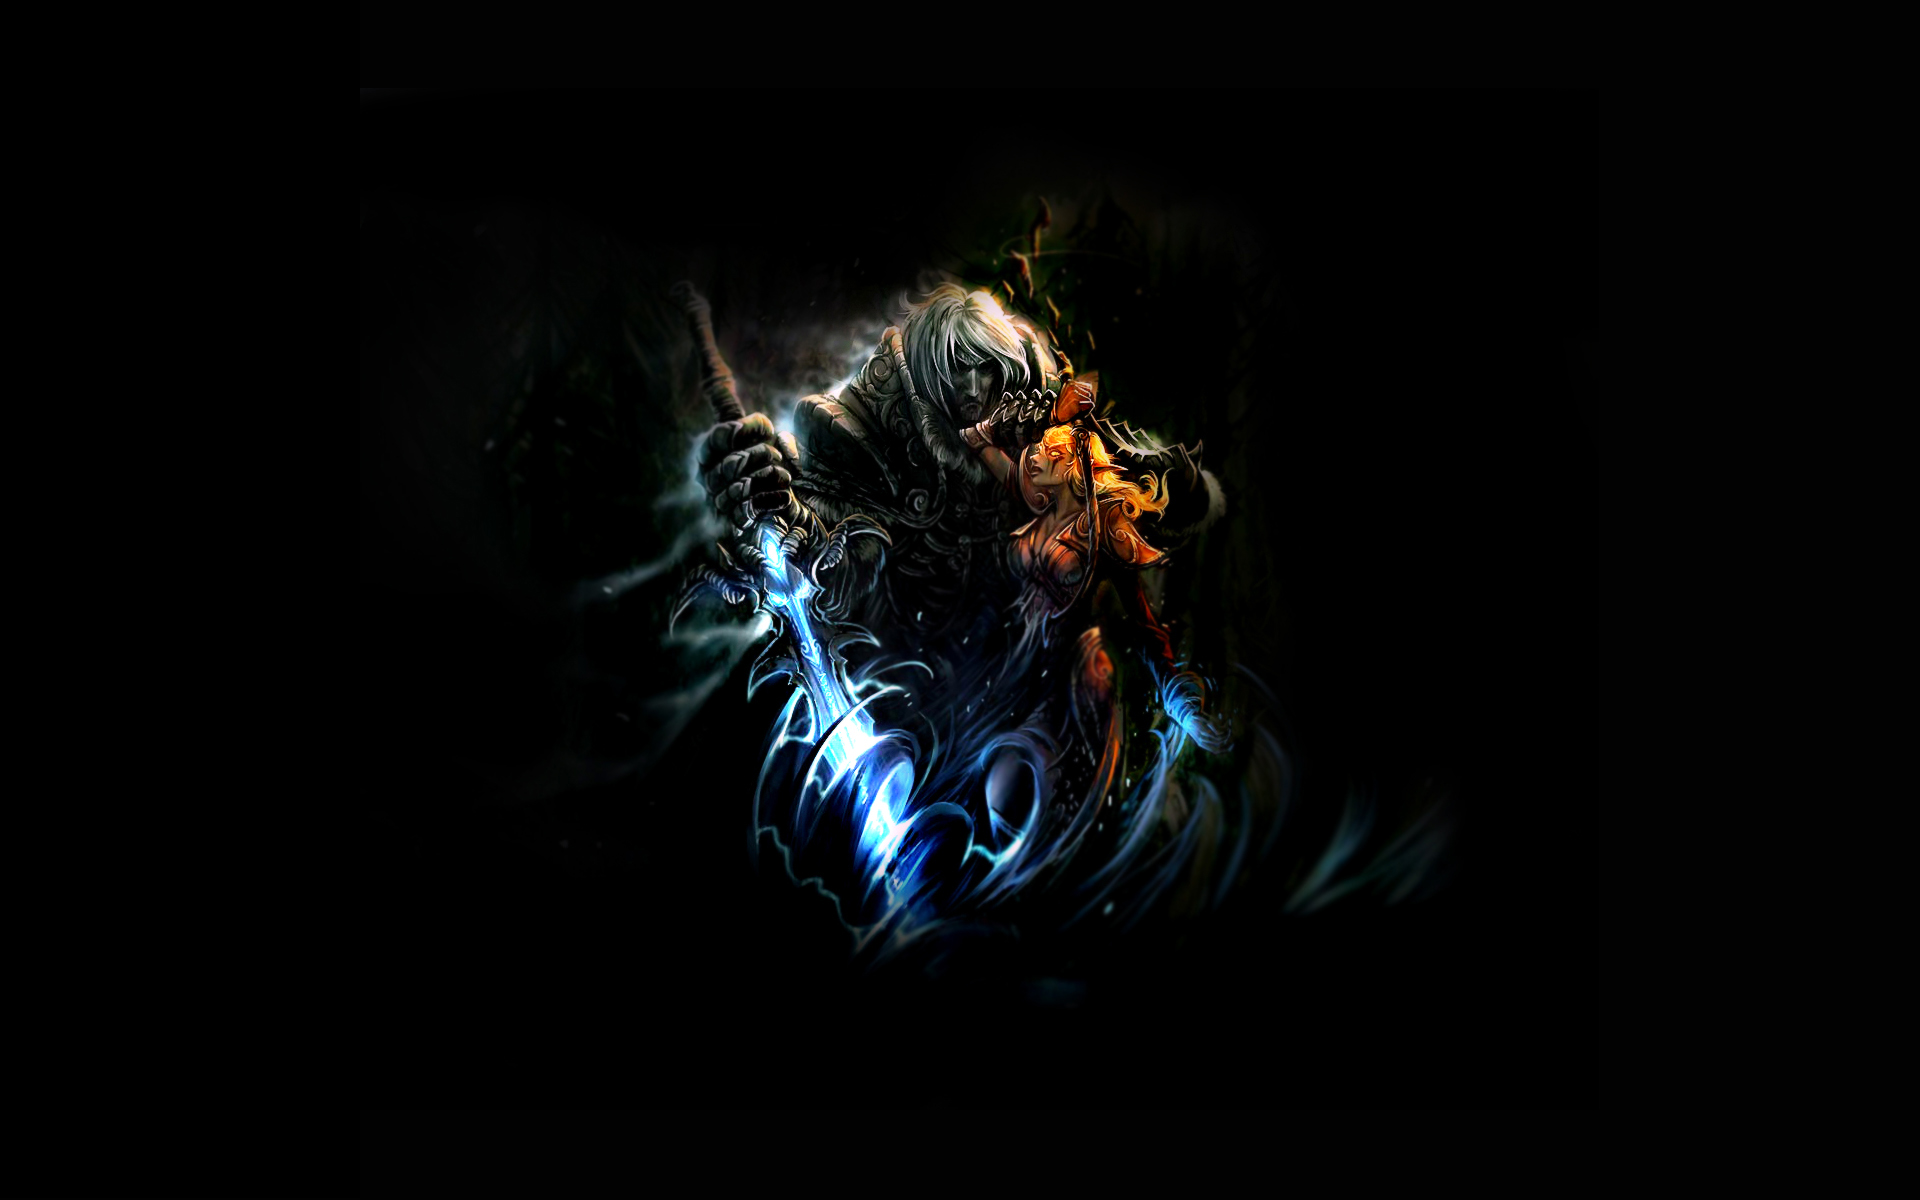 3d обои Воин с магическим мечем обнимает эльфийку с луком Warcraft  фэнтези # 85180